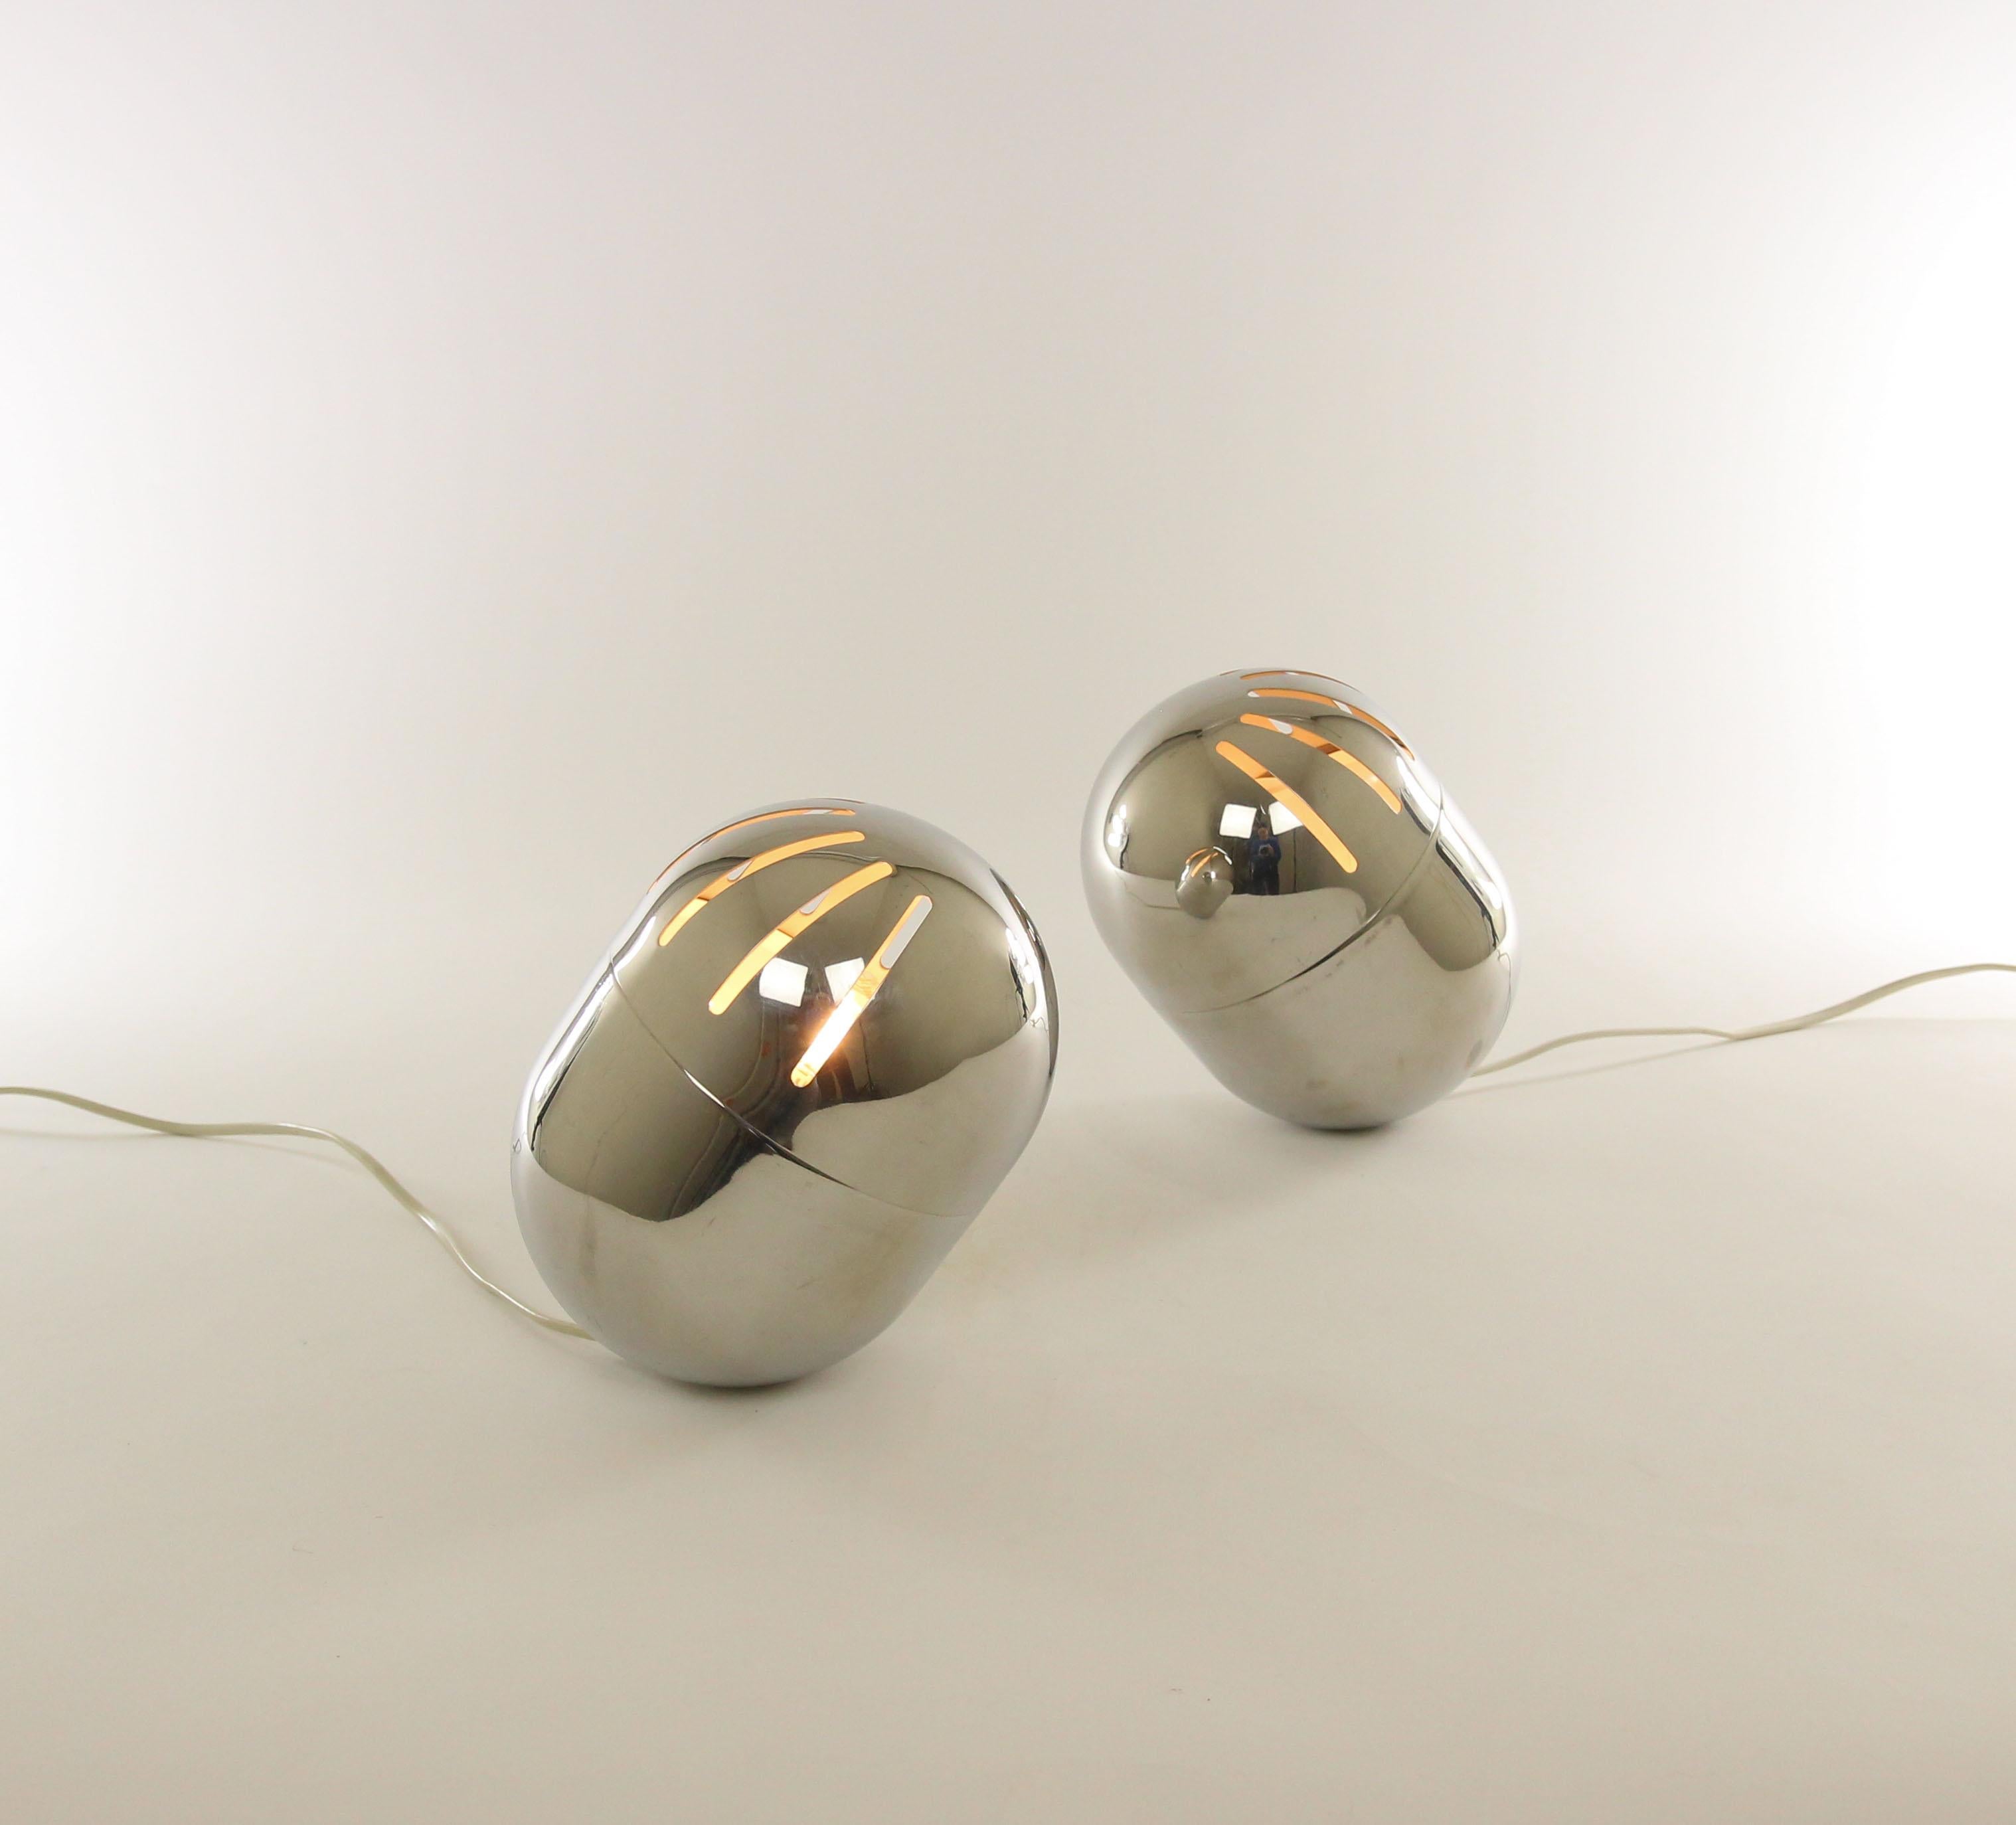 Ein Paar verchromte Tischlampen von Reggiani, wahrscheinlich aus den 1970er Jahren.

Der obere Teil der Leuchte, der drehbar ist, enthält acht längliche Öffnungen, durch die das Licht auf spielerische Art und Weise austritt. Der Boden der Leuchte